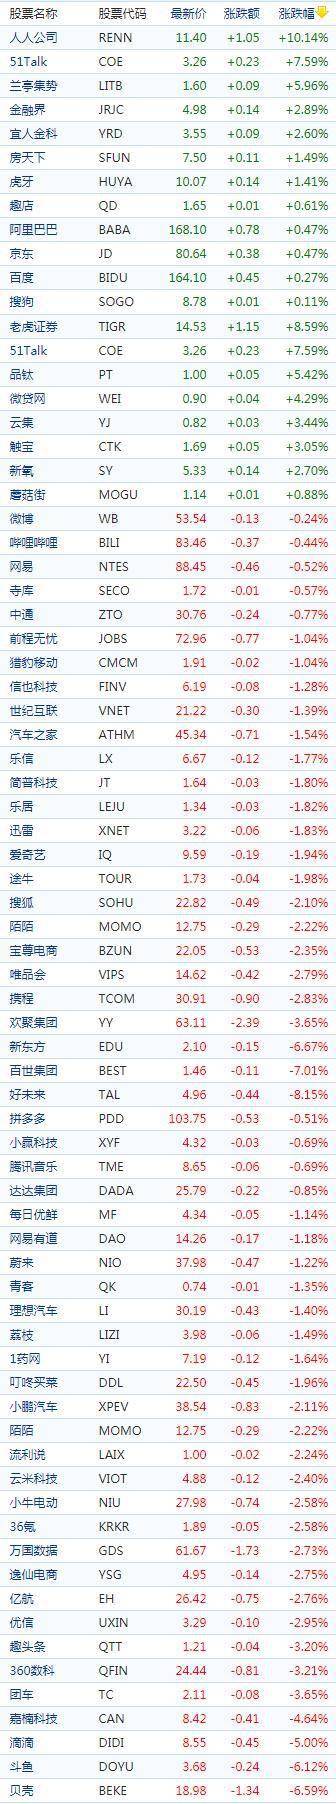 中国概念股周五收盘多数下跌 道指标普连续五个交易日走低